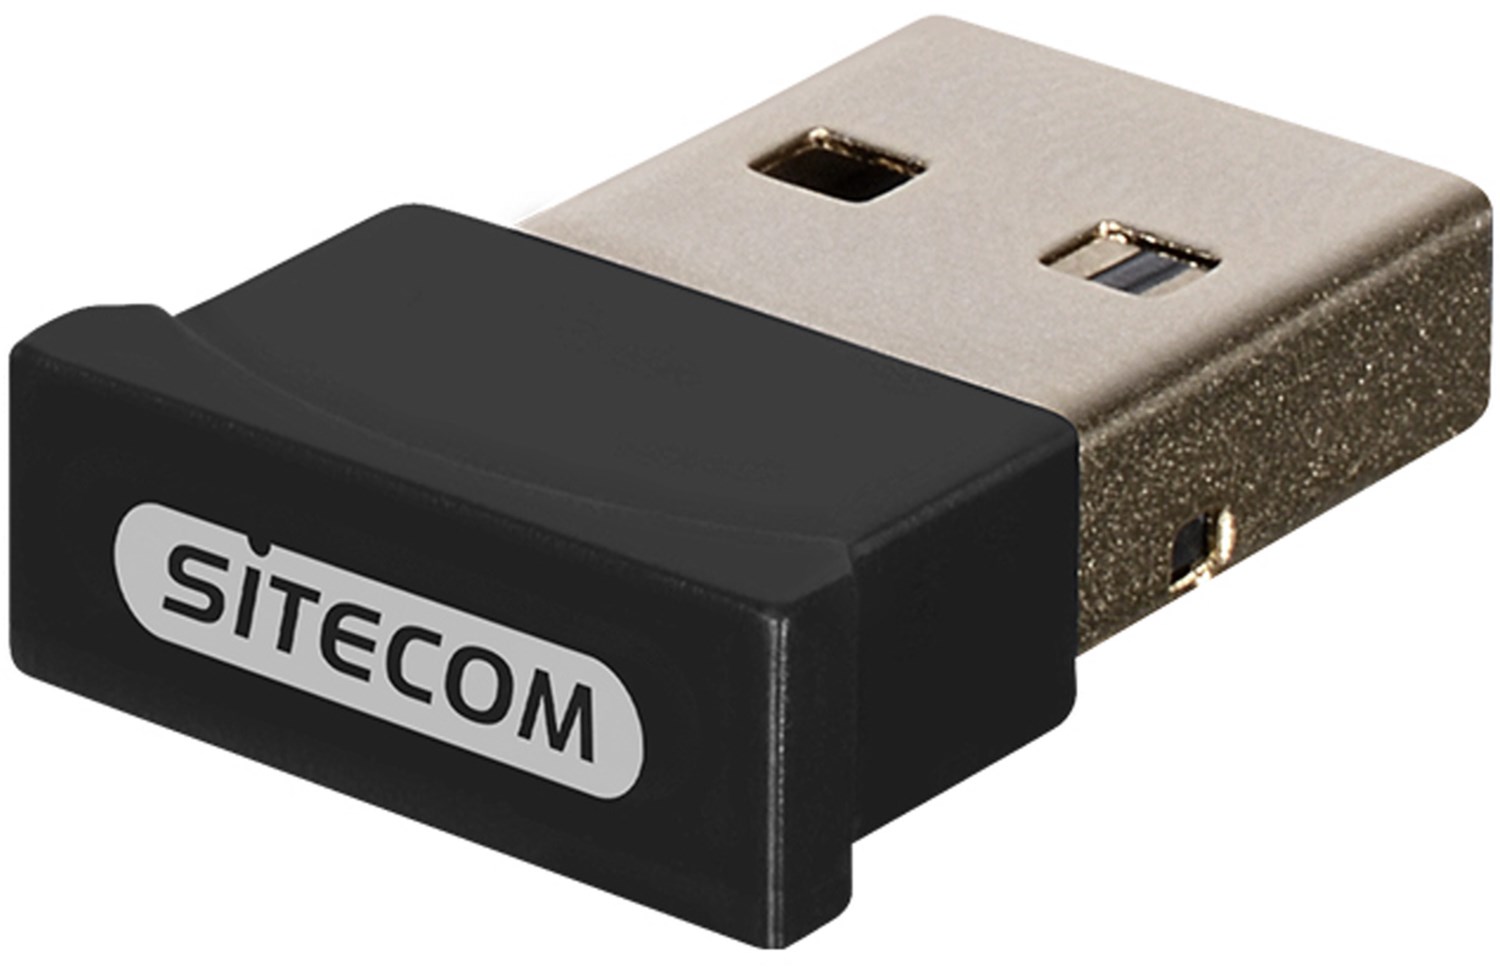 CN-525 USB 2.0 BT Adapter